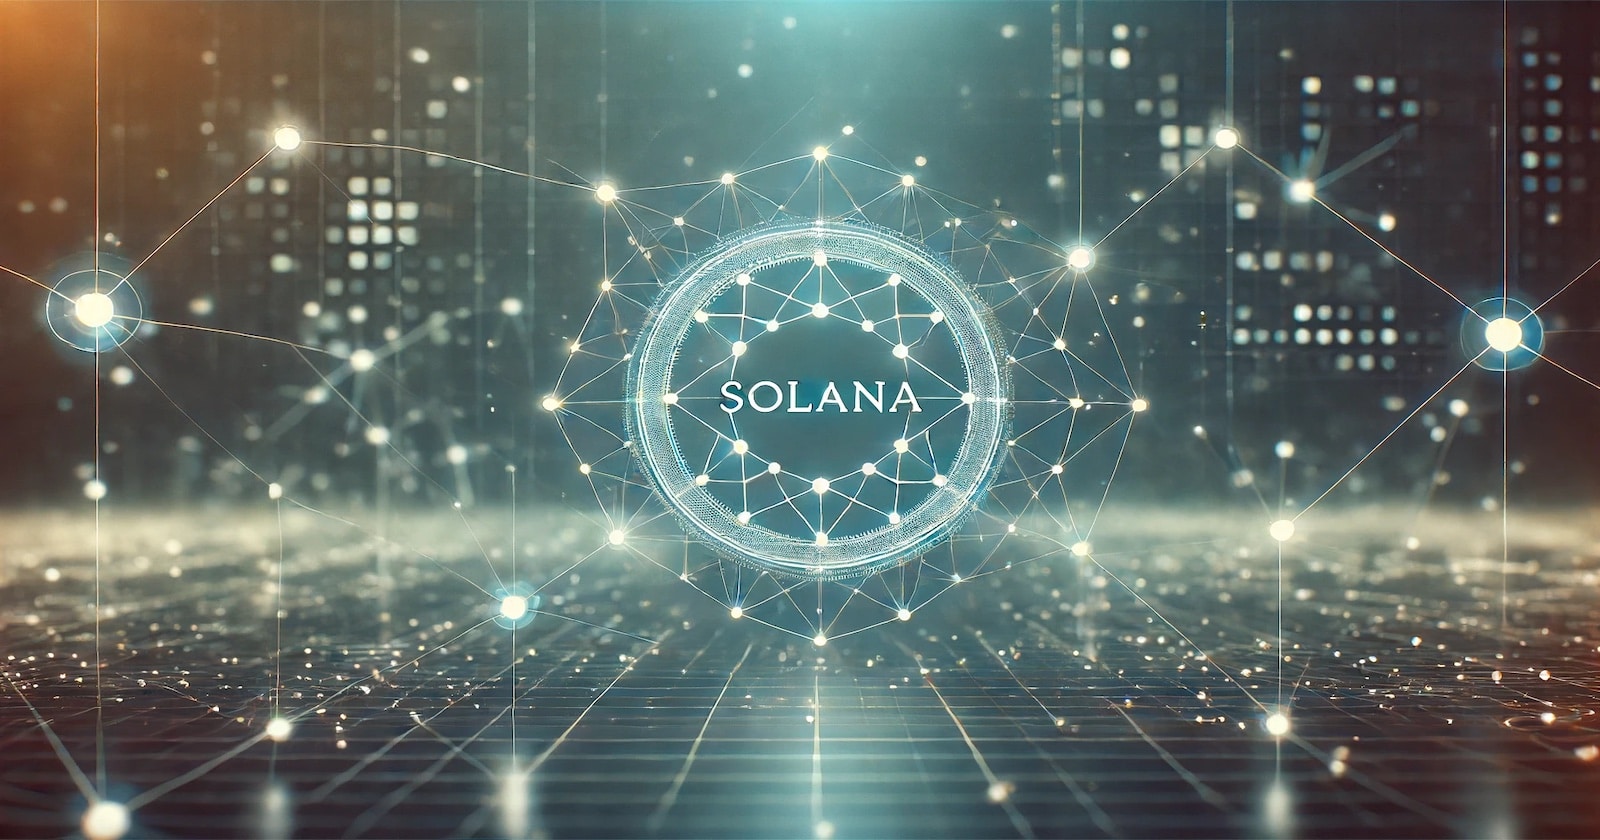 Sealana ($SEAL), a nova memecoin da Solana que promete ganhos aos primeiros investidores